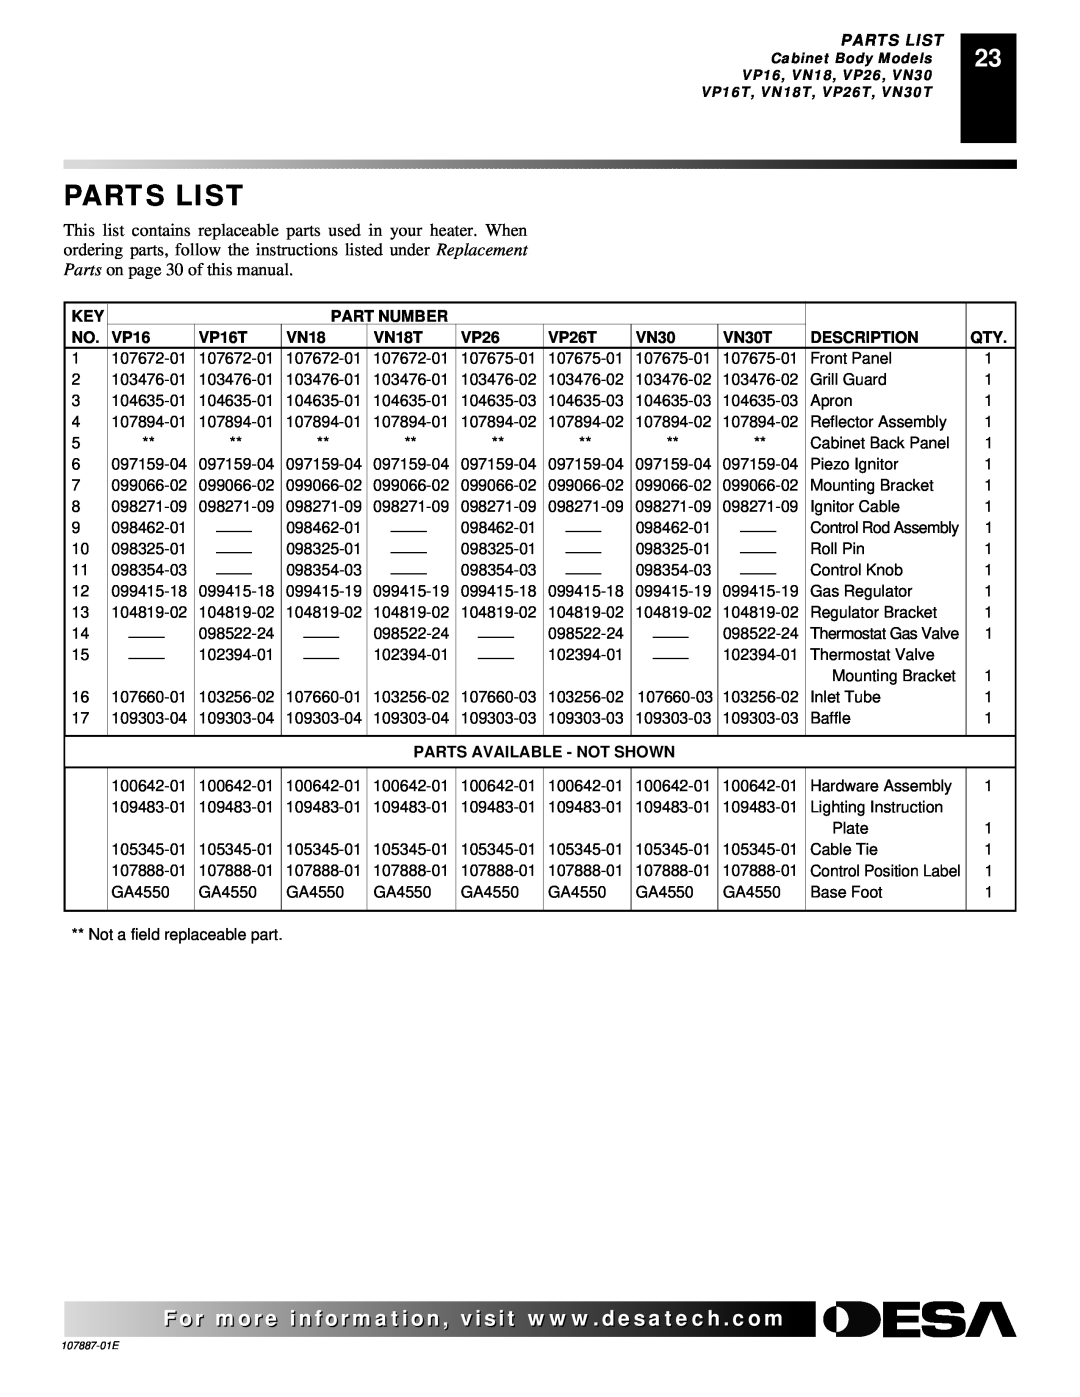 Desa VN18IT Parts List, Part Number, VP16T, VN18T, VP26T, VN30T, Description, Parts Available - Not Shown 